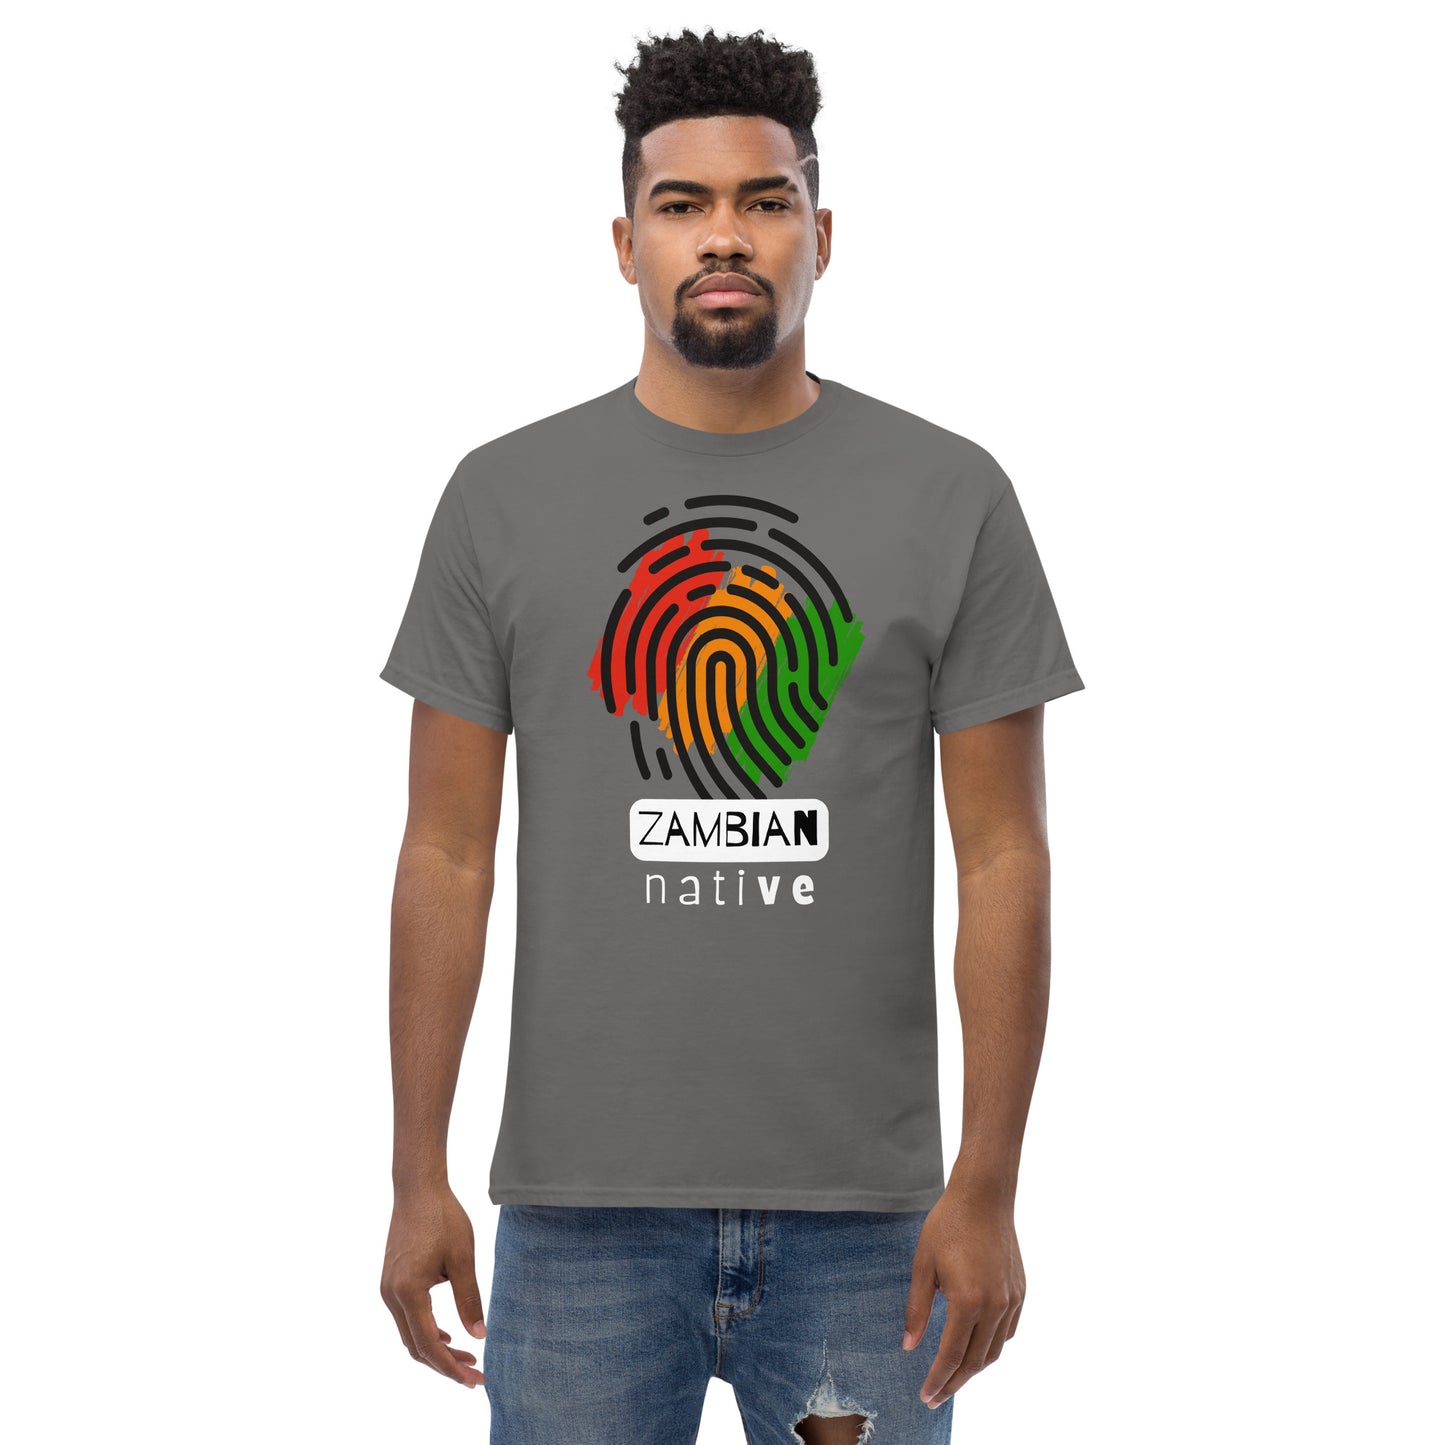 Men's classic Zambian Native t shirt